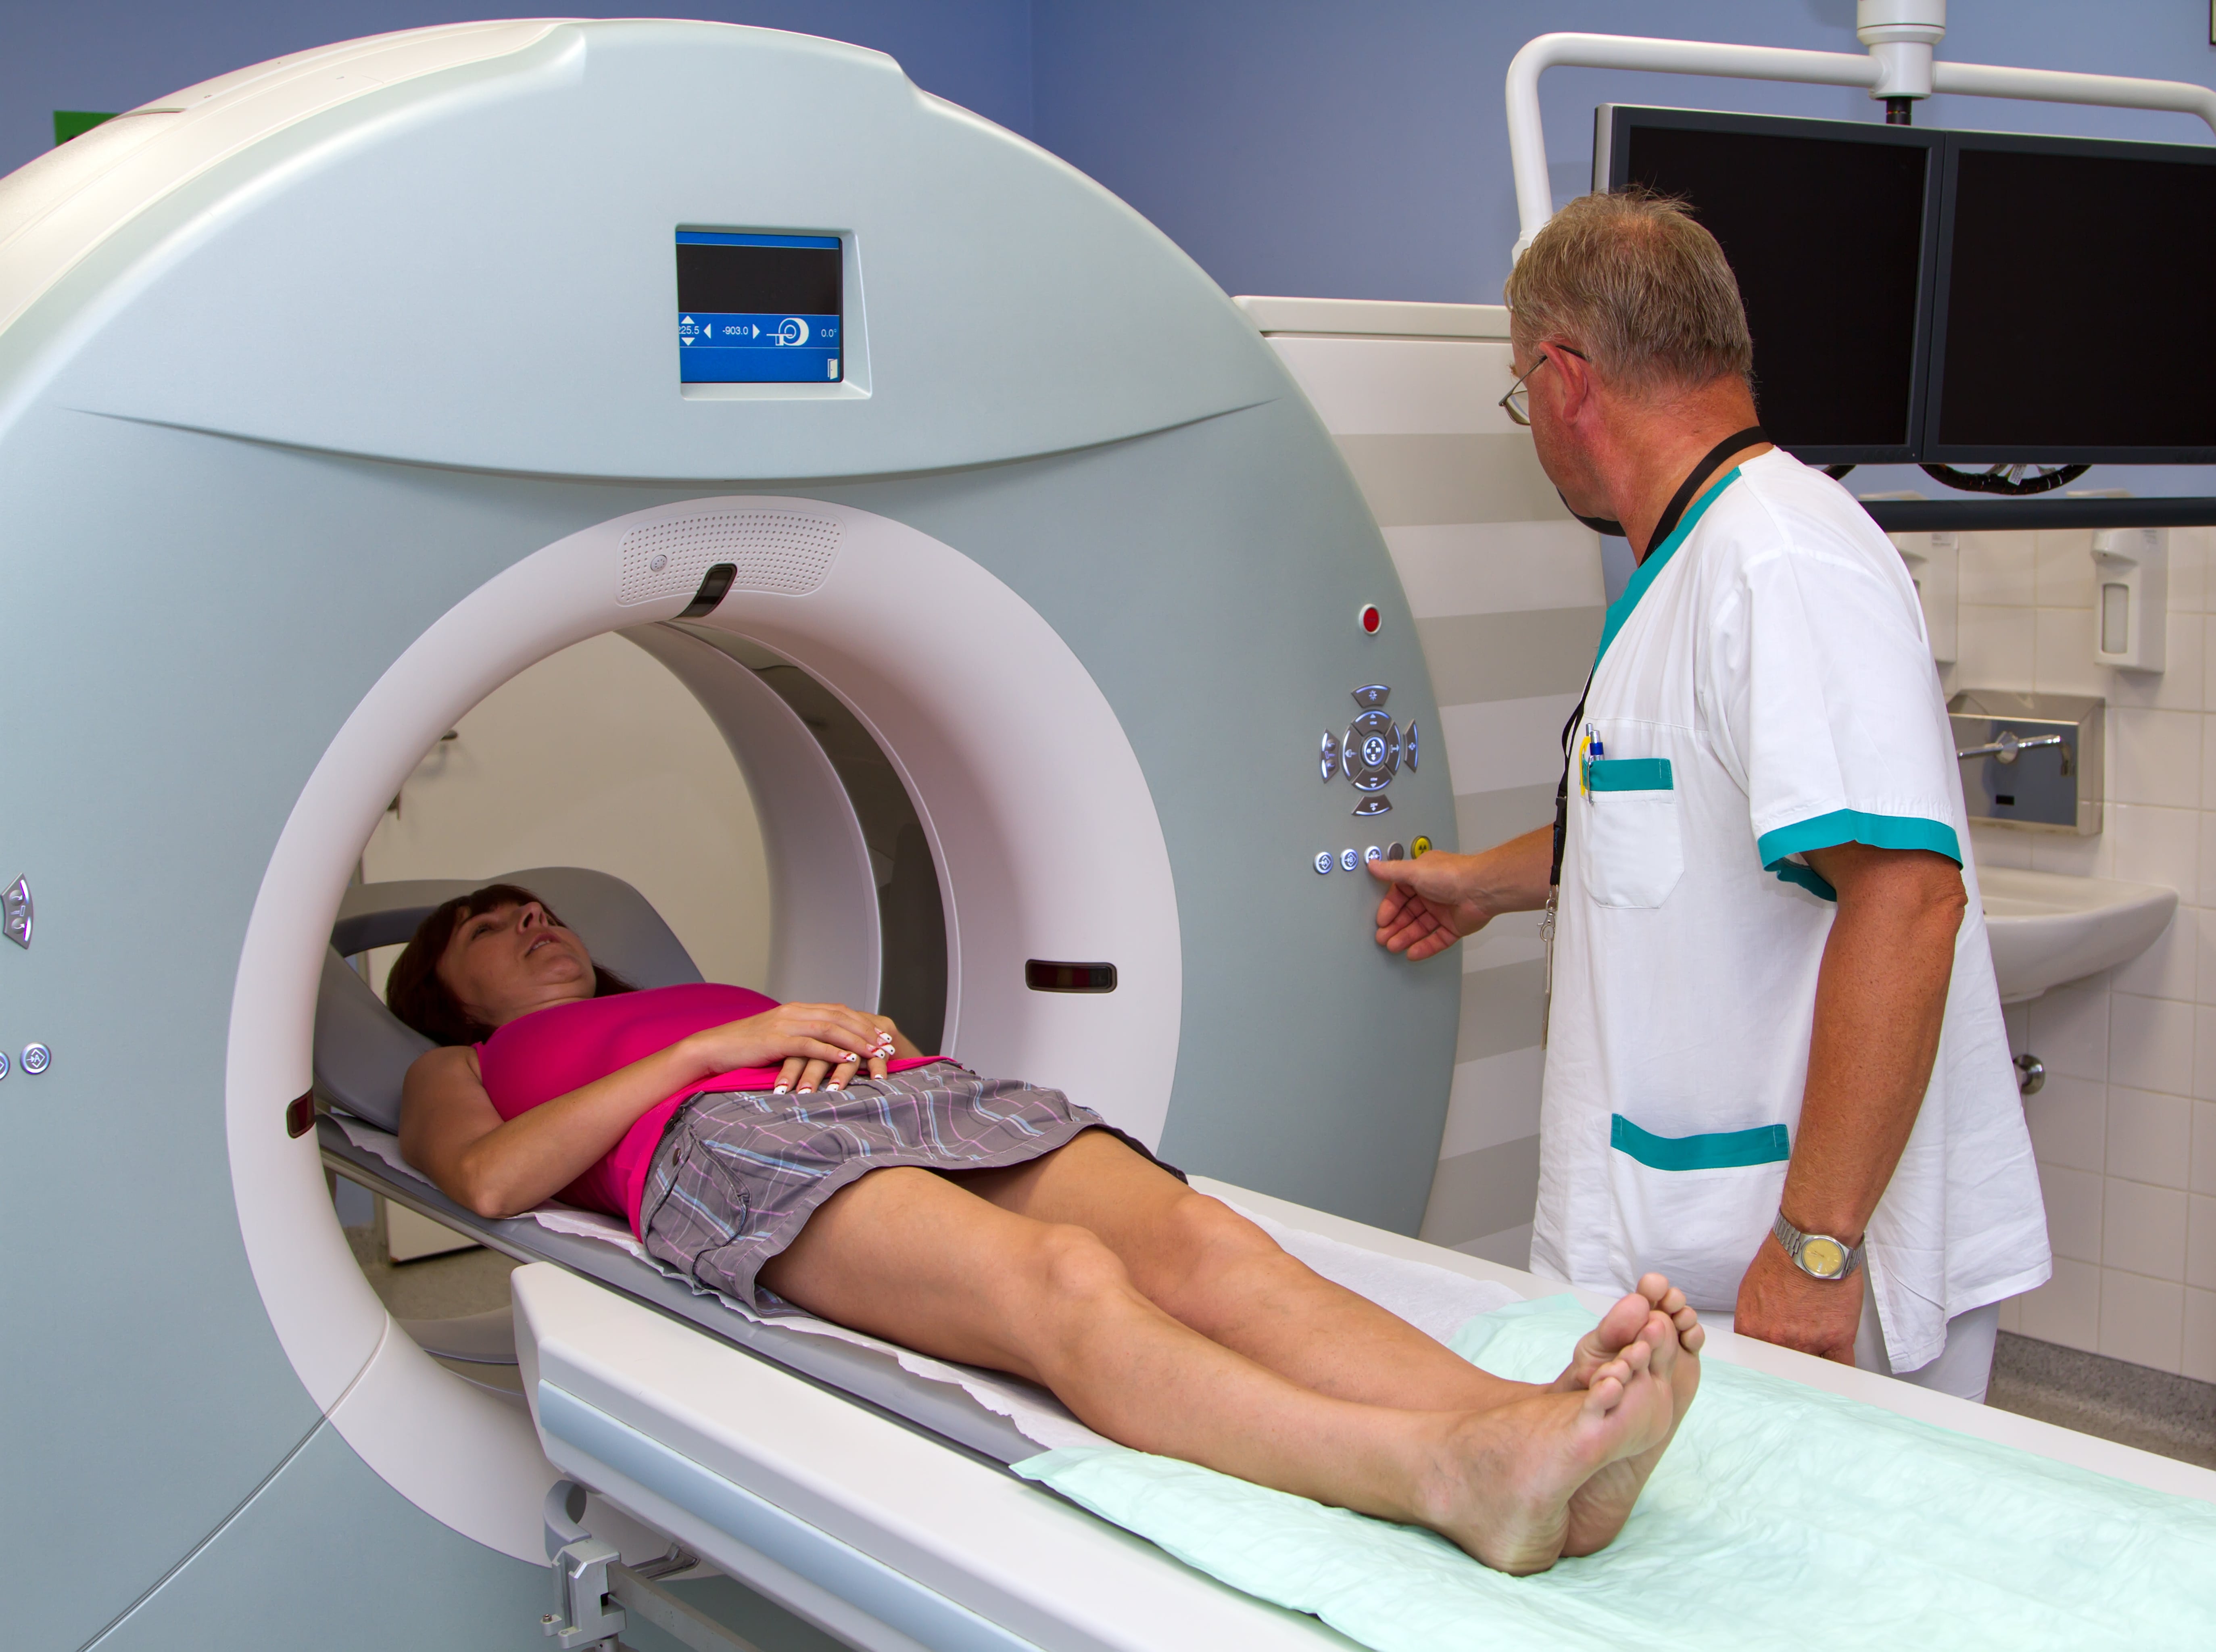 MRI imaging machine in a hospital